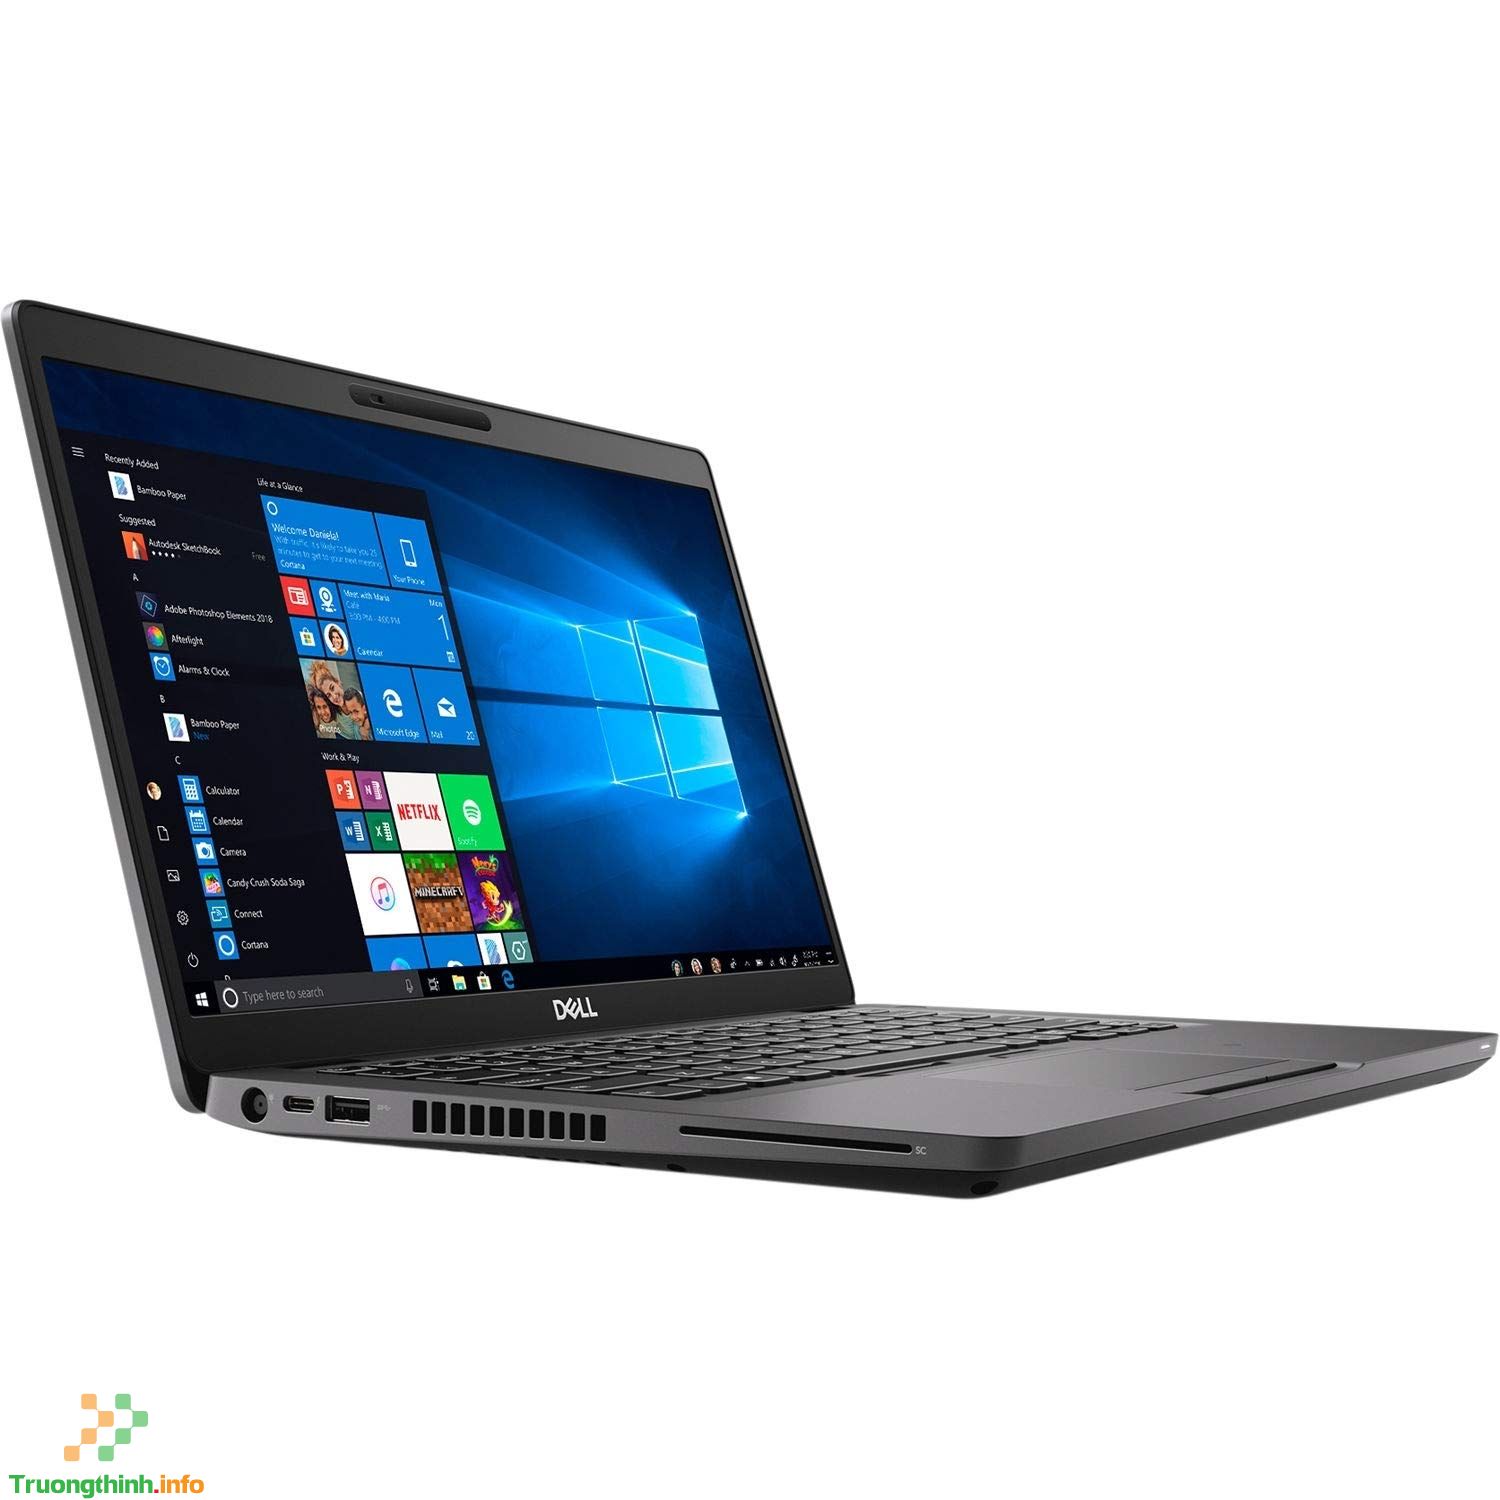  mua bán sửa thay pin Laptop Dell latitude 5400 Giá Rẻ | Vi Tính Trường Thịnh